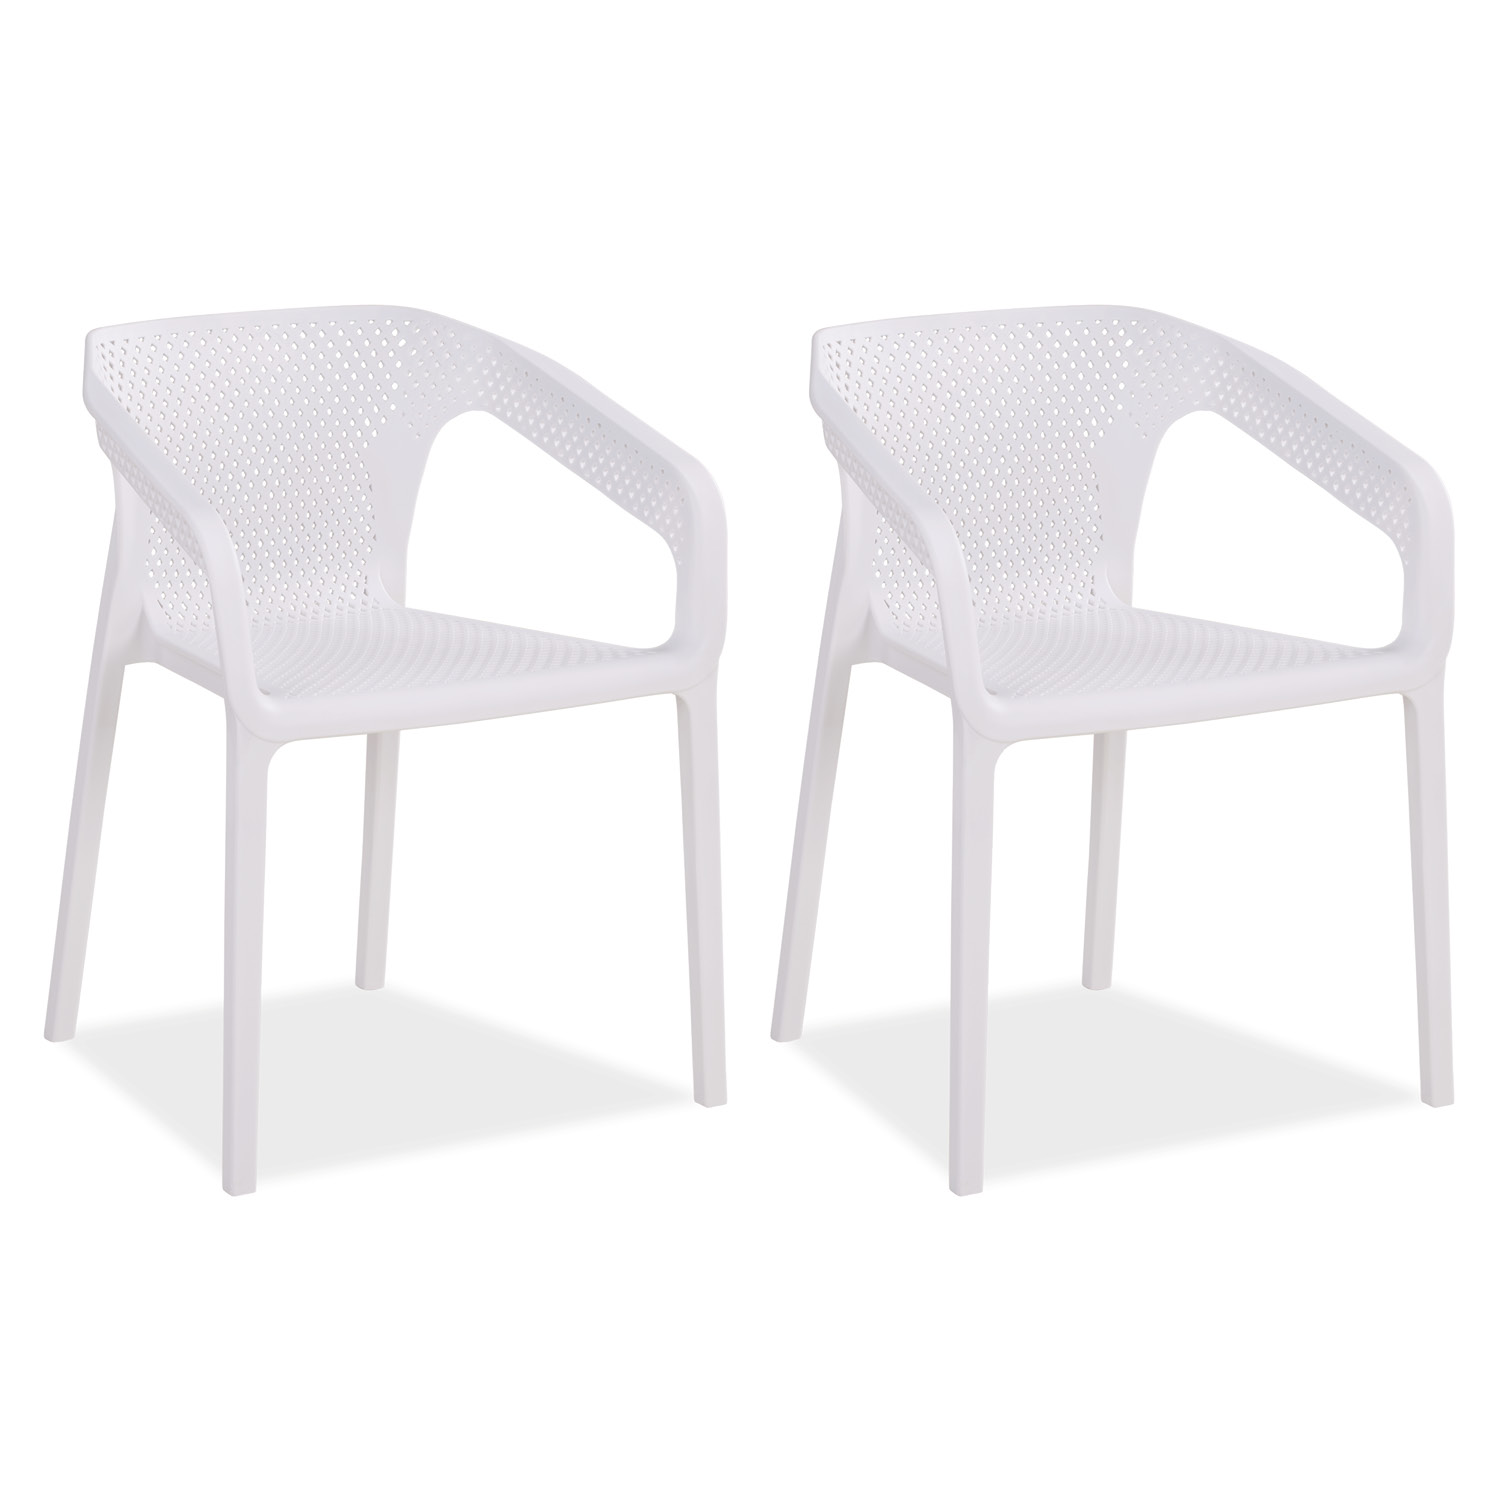 Chaise de jardin avec accoudoirs Blanc Lot de 2 Fauteuils de jardin Plastique Chaises exterieur Chaises empilable